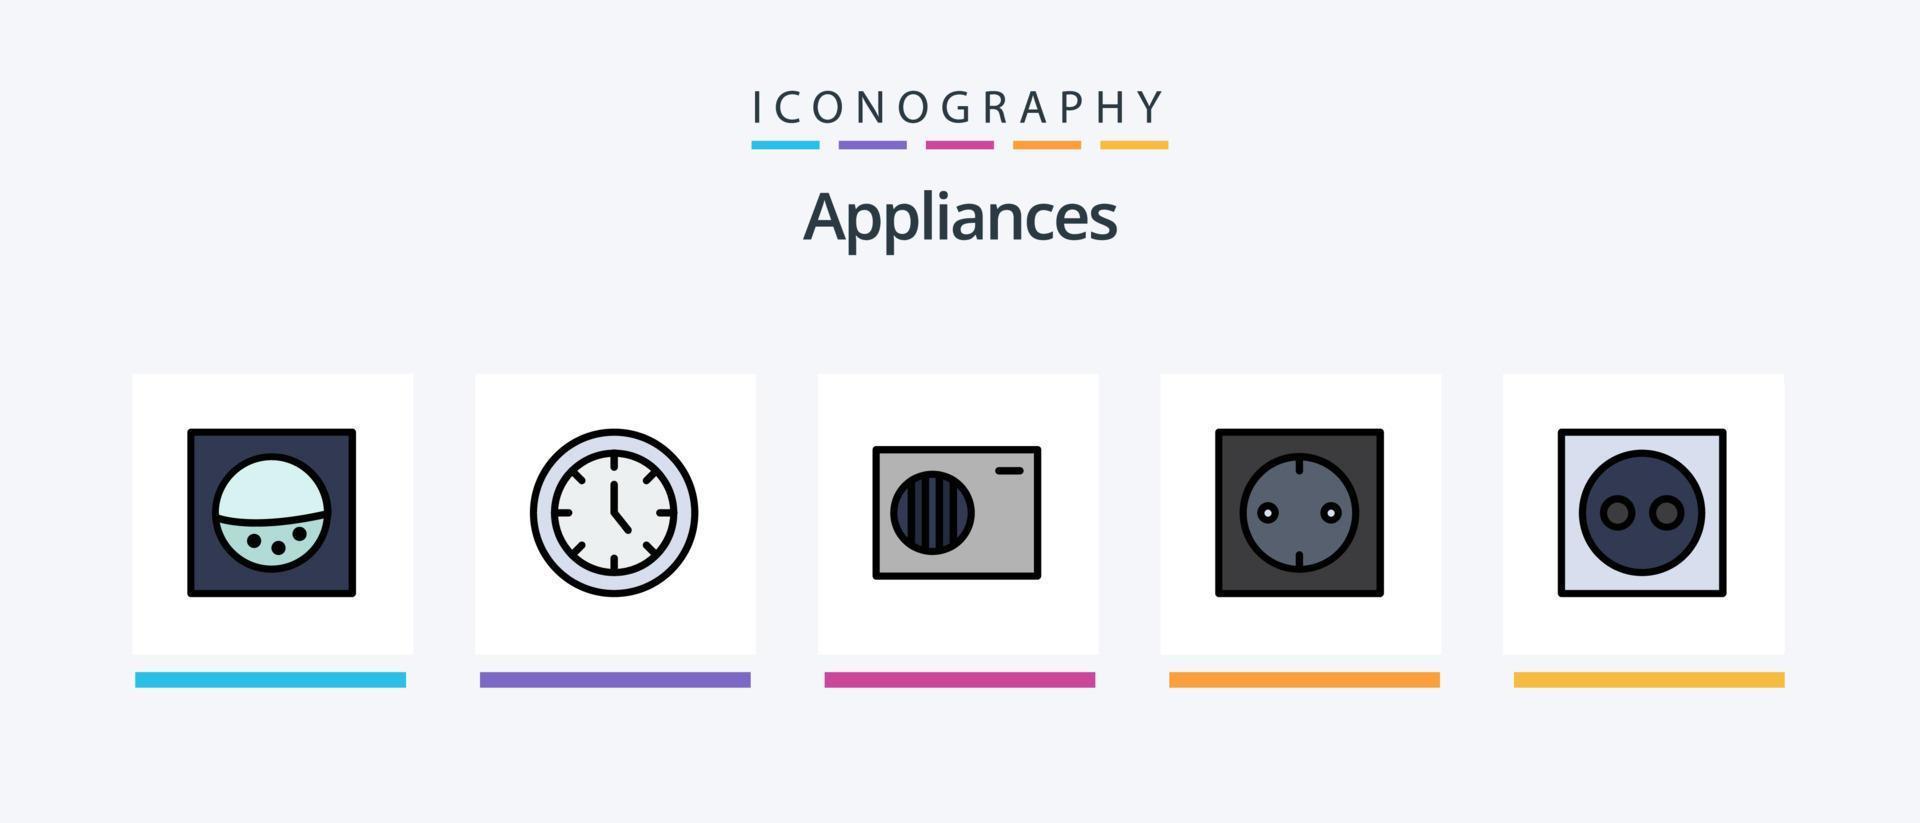 ligne d'appareils remplie de 5 packs d'icônes, y compris. Extérieur. maison. conception d'icônes créatives vecteur